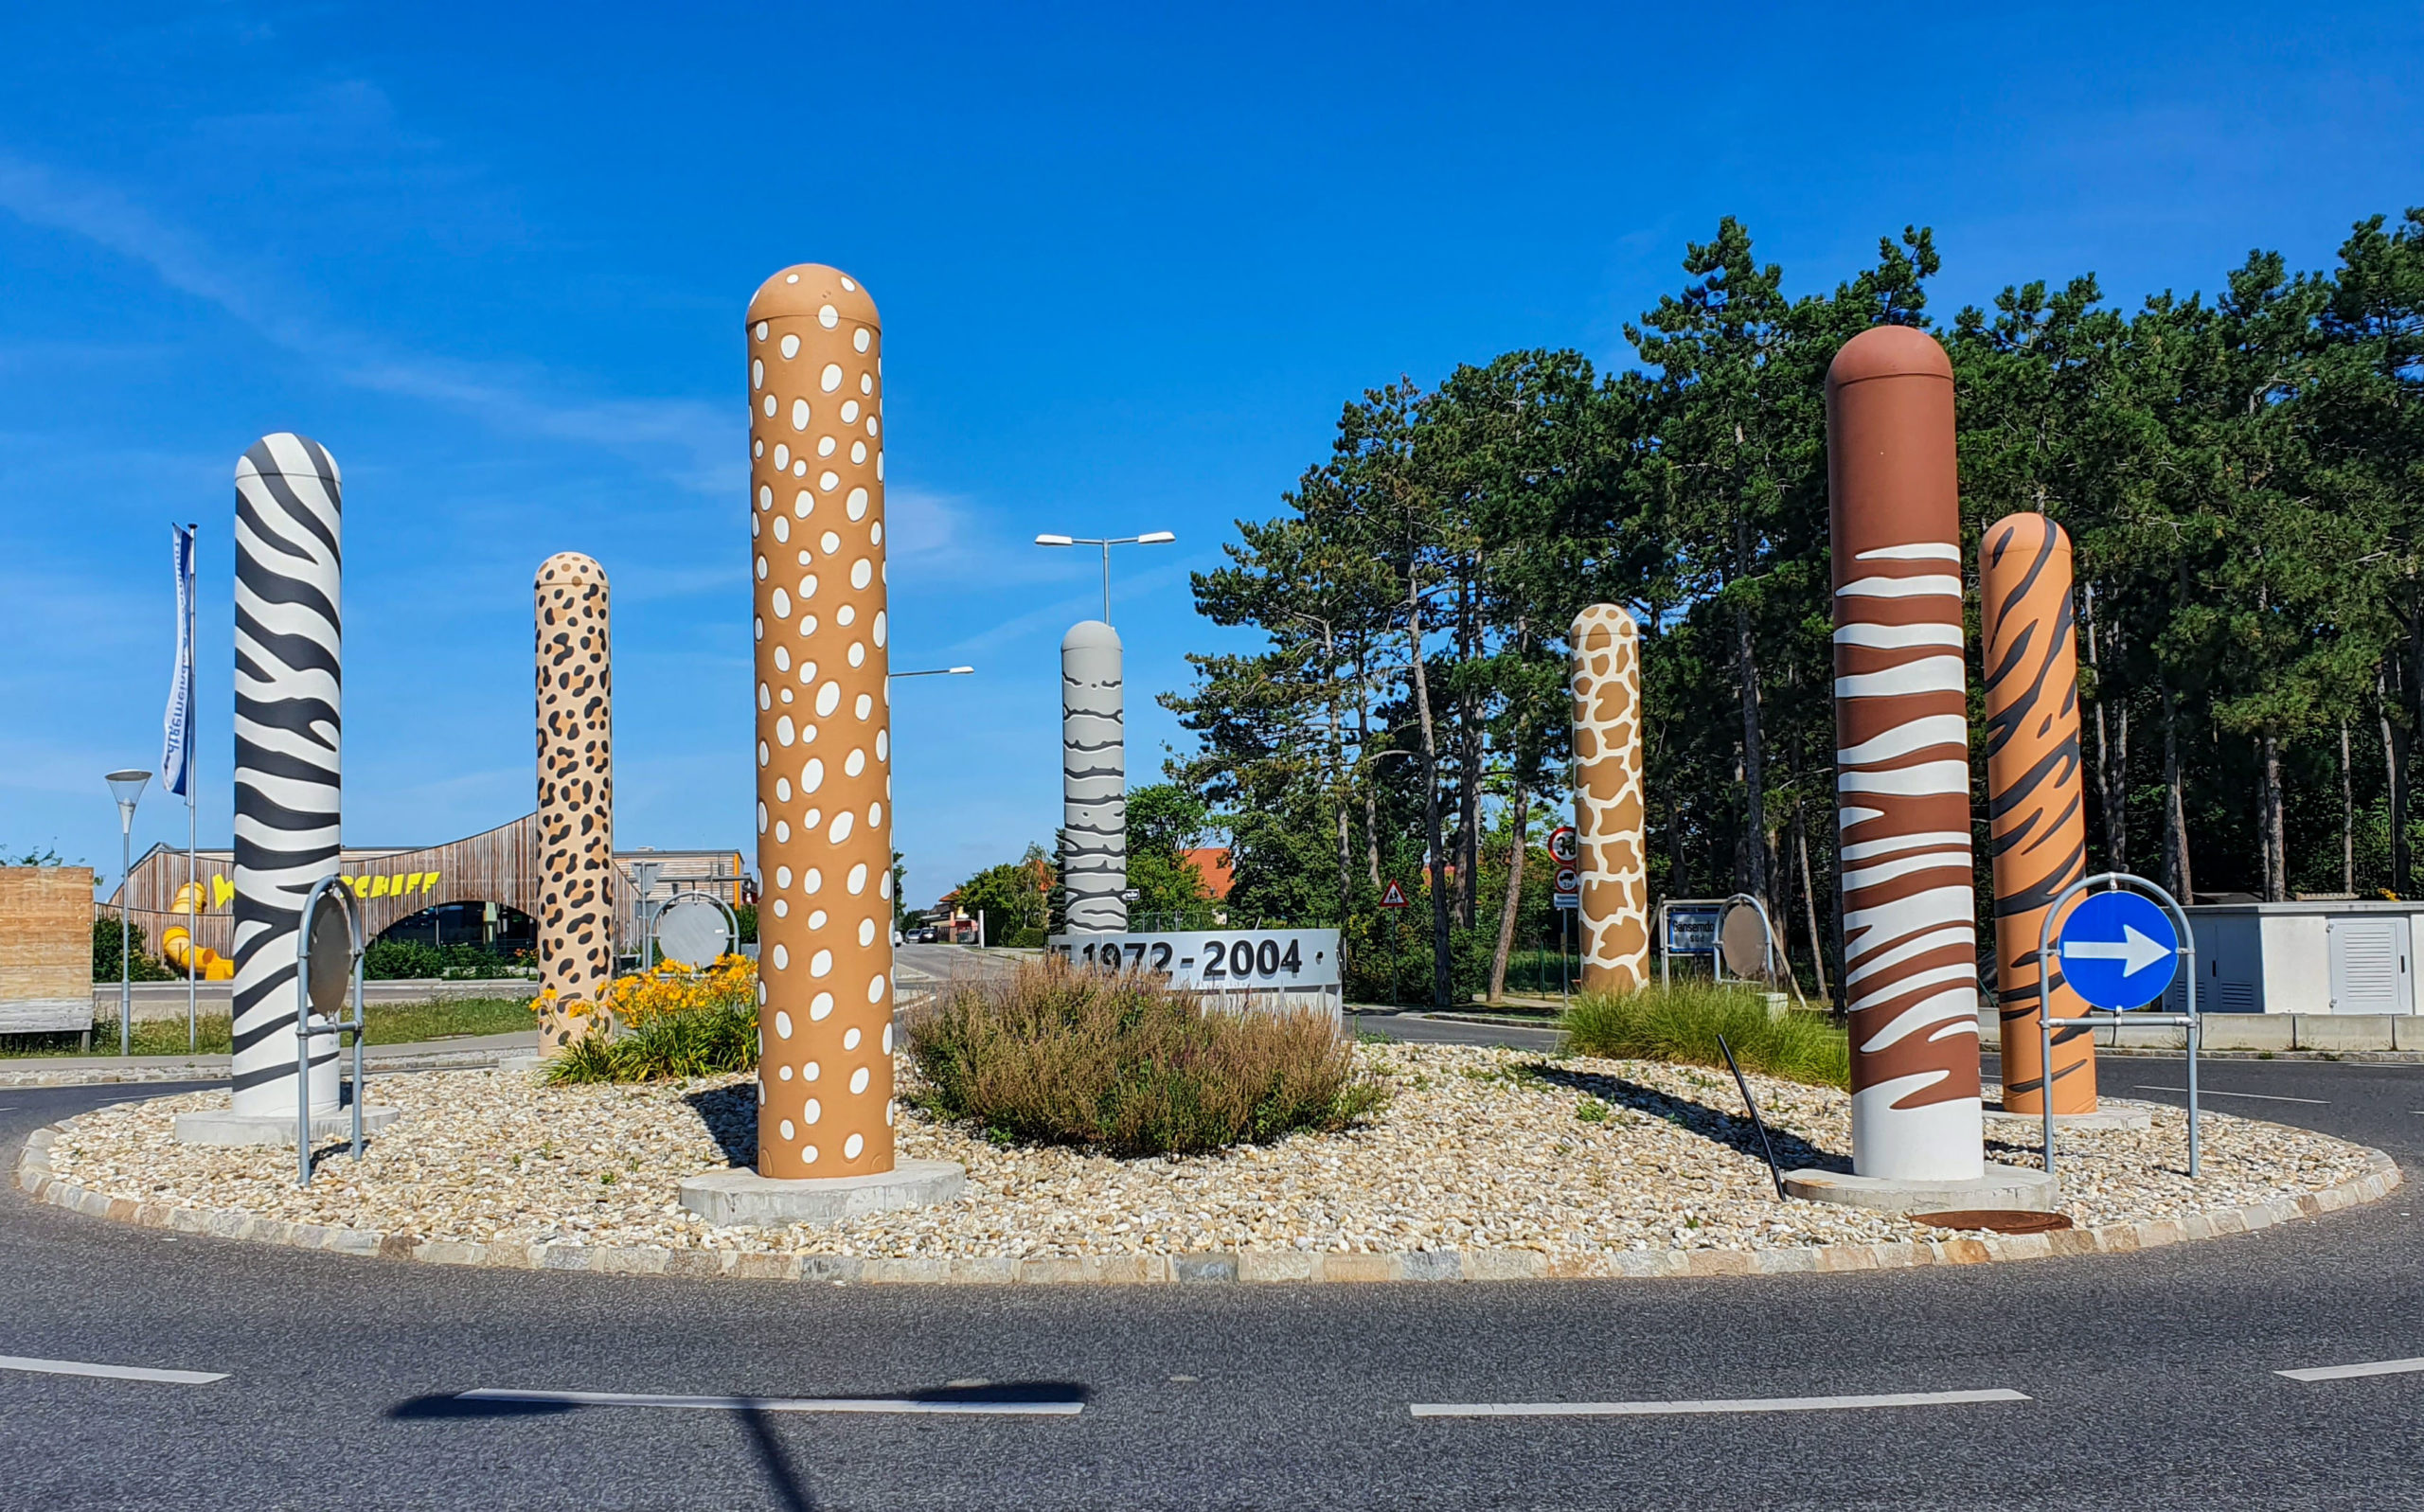 Safaripark Säulen in Gänserndorf